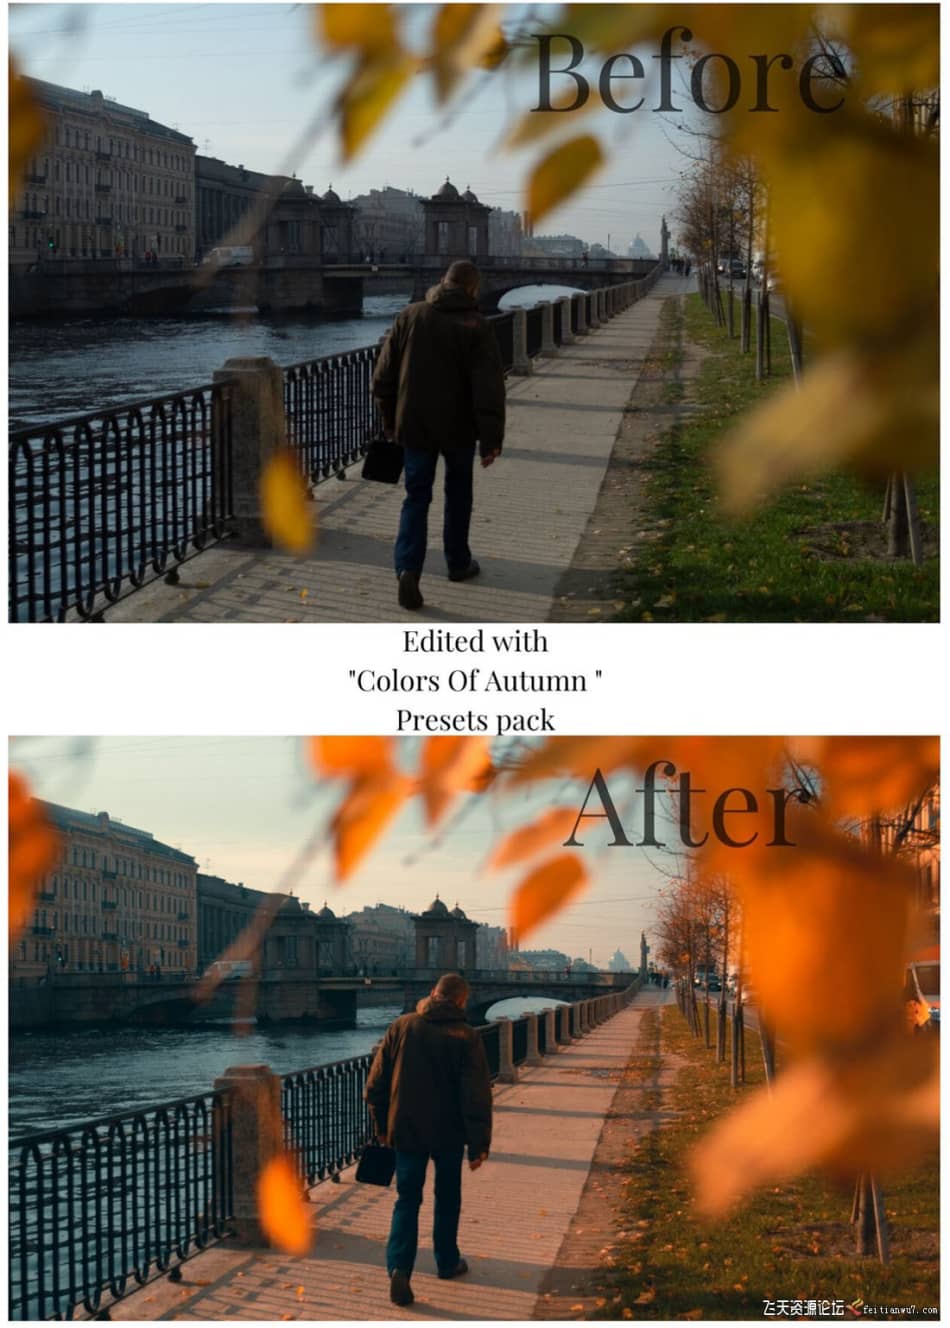 [旅拍LR预设] 街头摄影师 Viktor Balaguer 秋天的色彩Lightroom预设 Colors Of Autumn LR预设 第3张